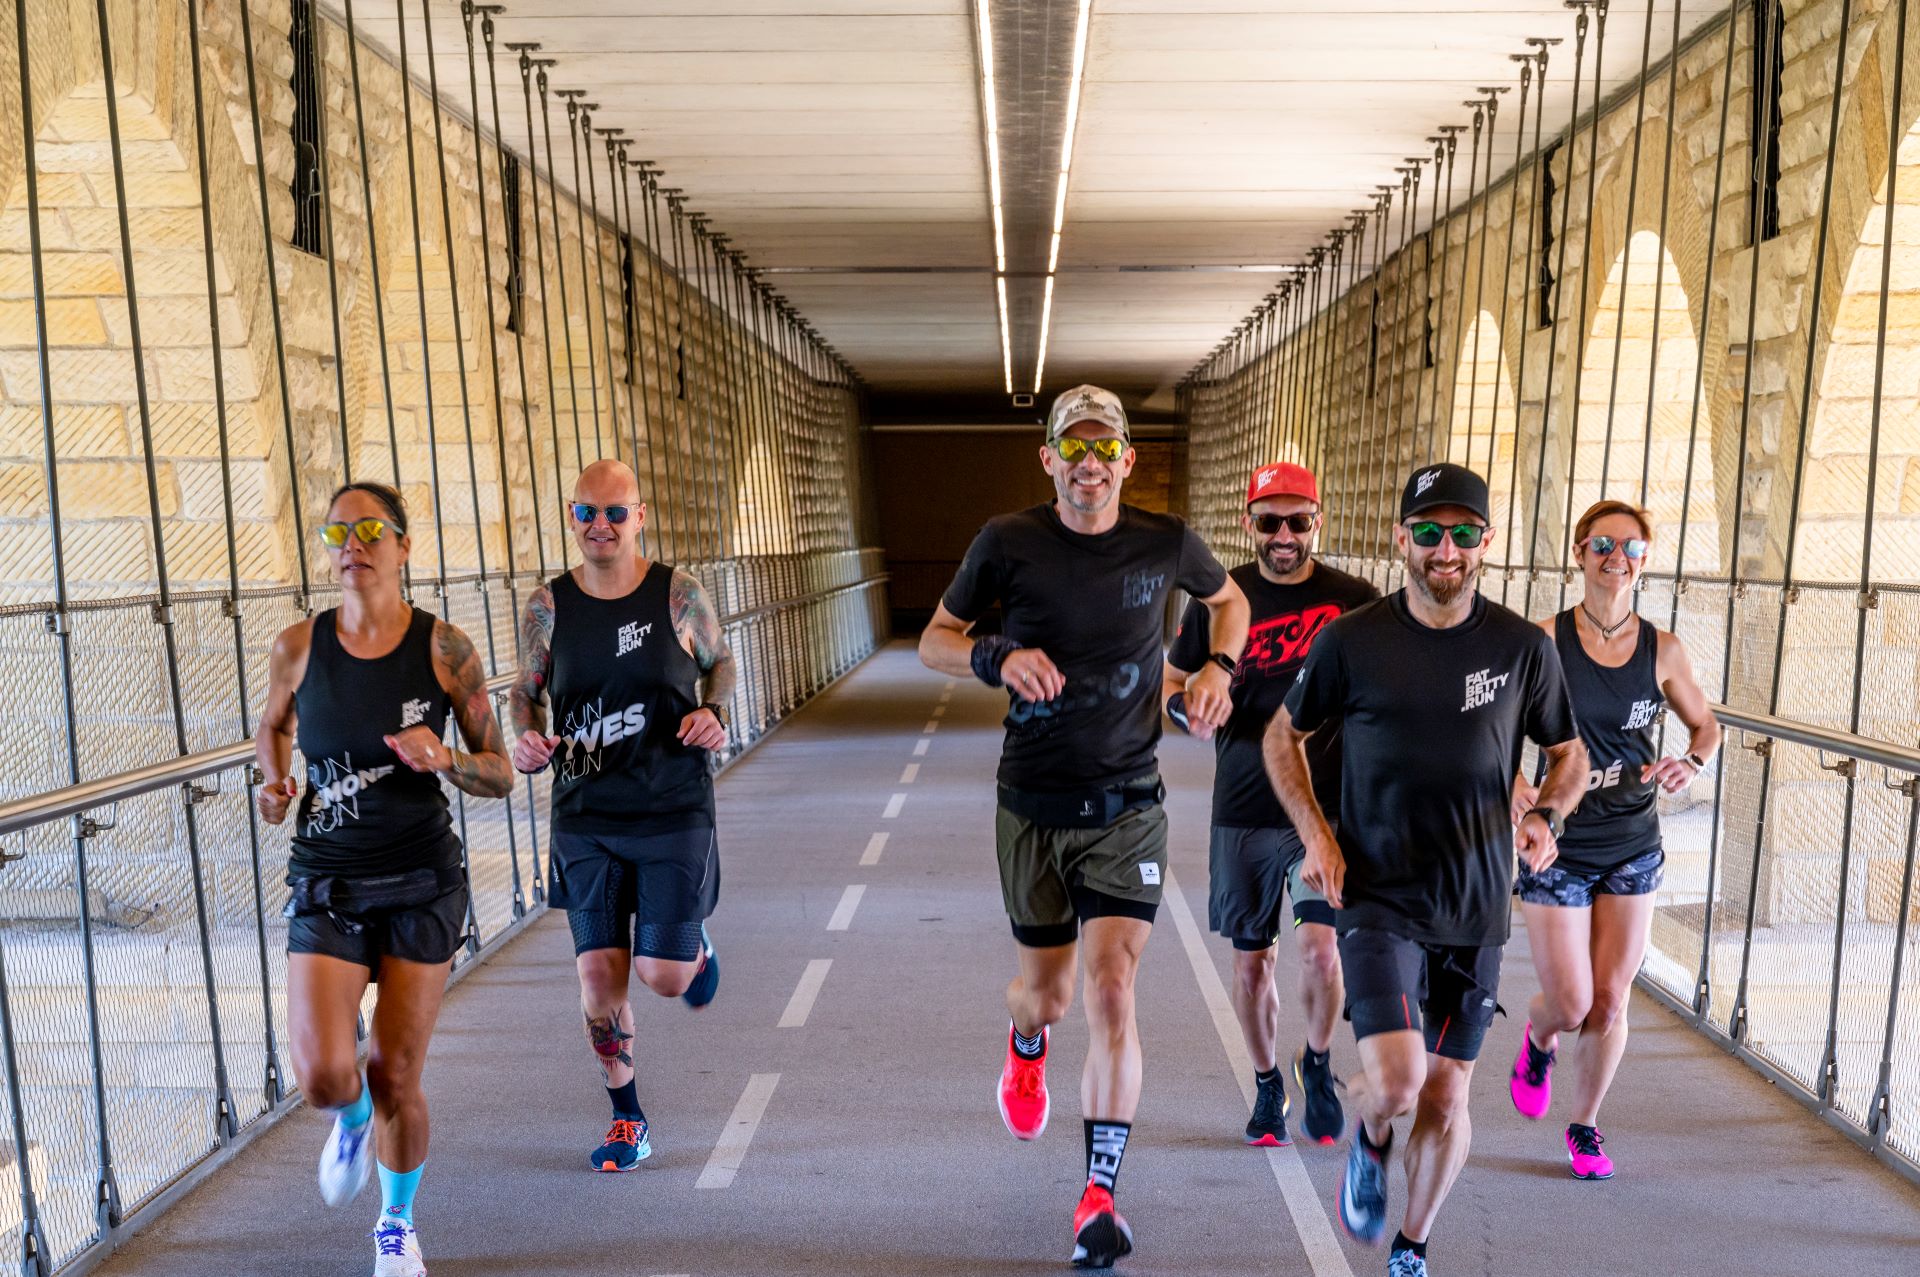 Sechs Mitglieder des Laufteams von FatBetty.run sind auf dieser Aktionsaufnahme zu sehen. Die Läufer überqueren eine überdachte Brücke aus Stein, tragen dunkle Laufkleidung, Sonnenbrillen und ein breites Lächeln.